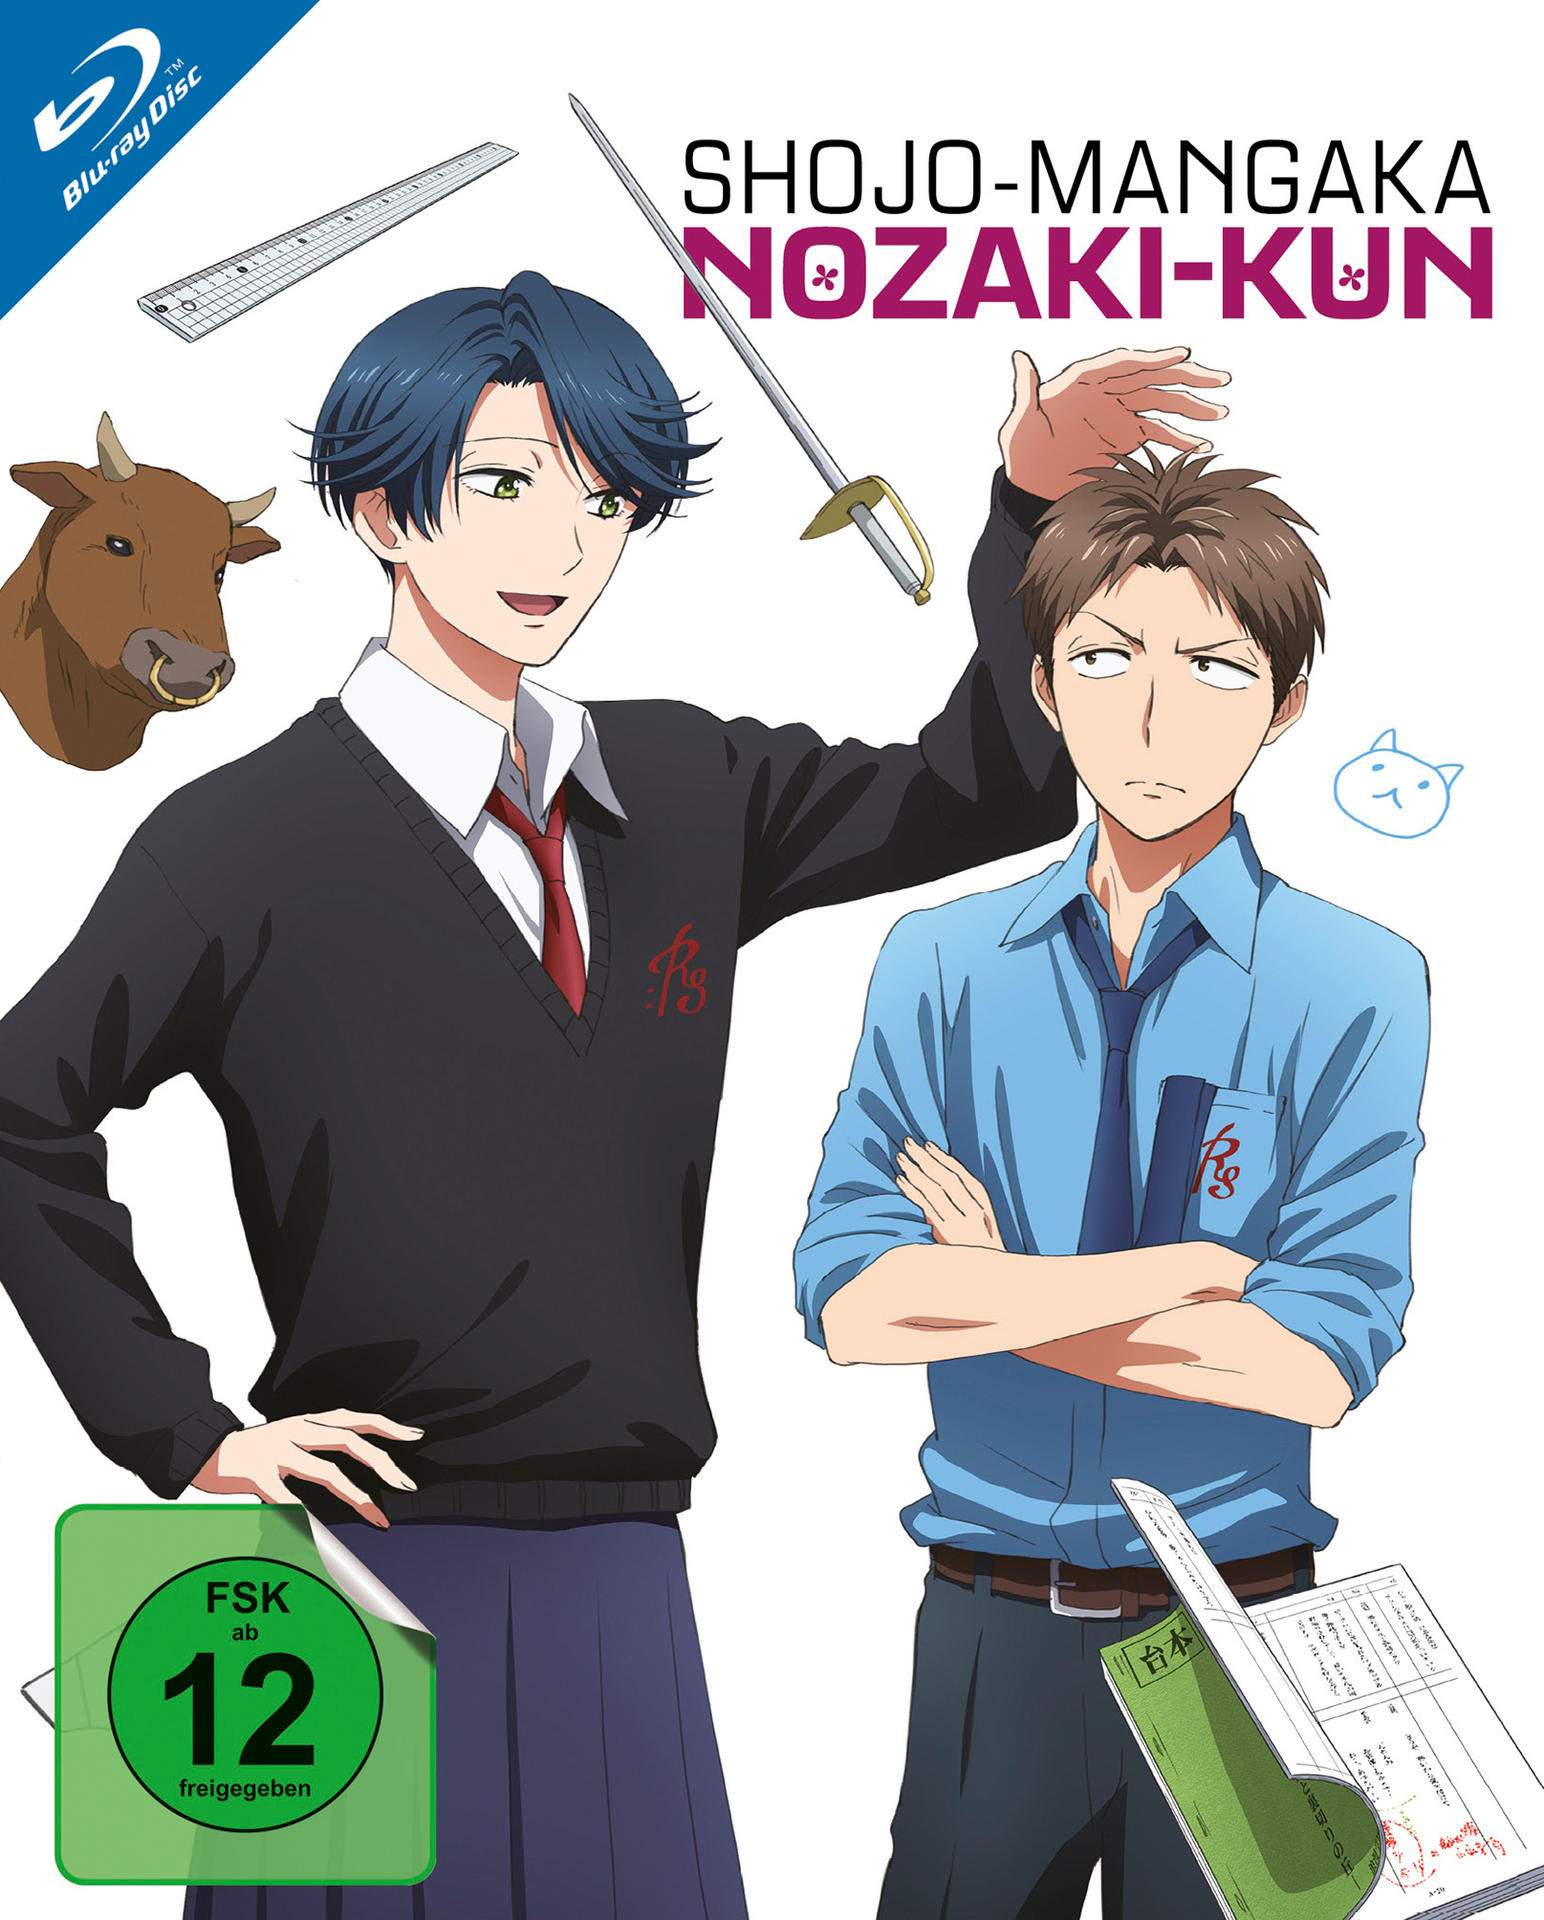 Nozaki-Kun 2 Vol. Blu-ray Shojo-Mangaka 5-8) (Ep.